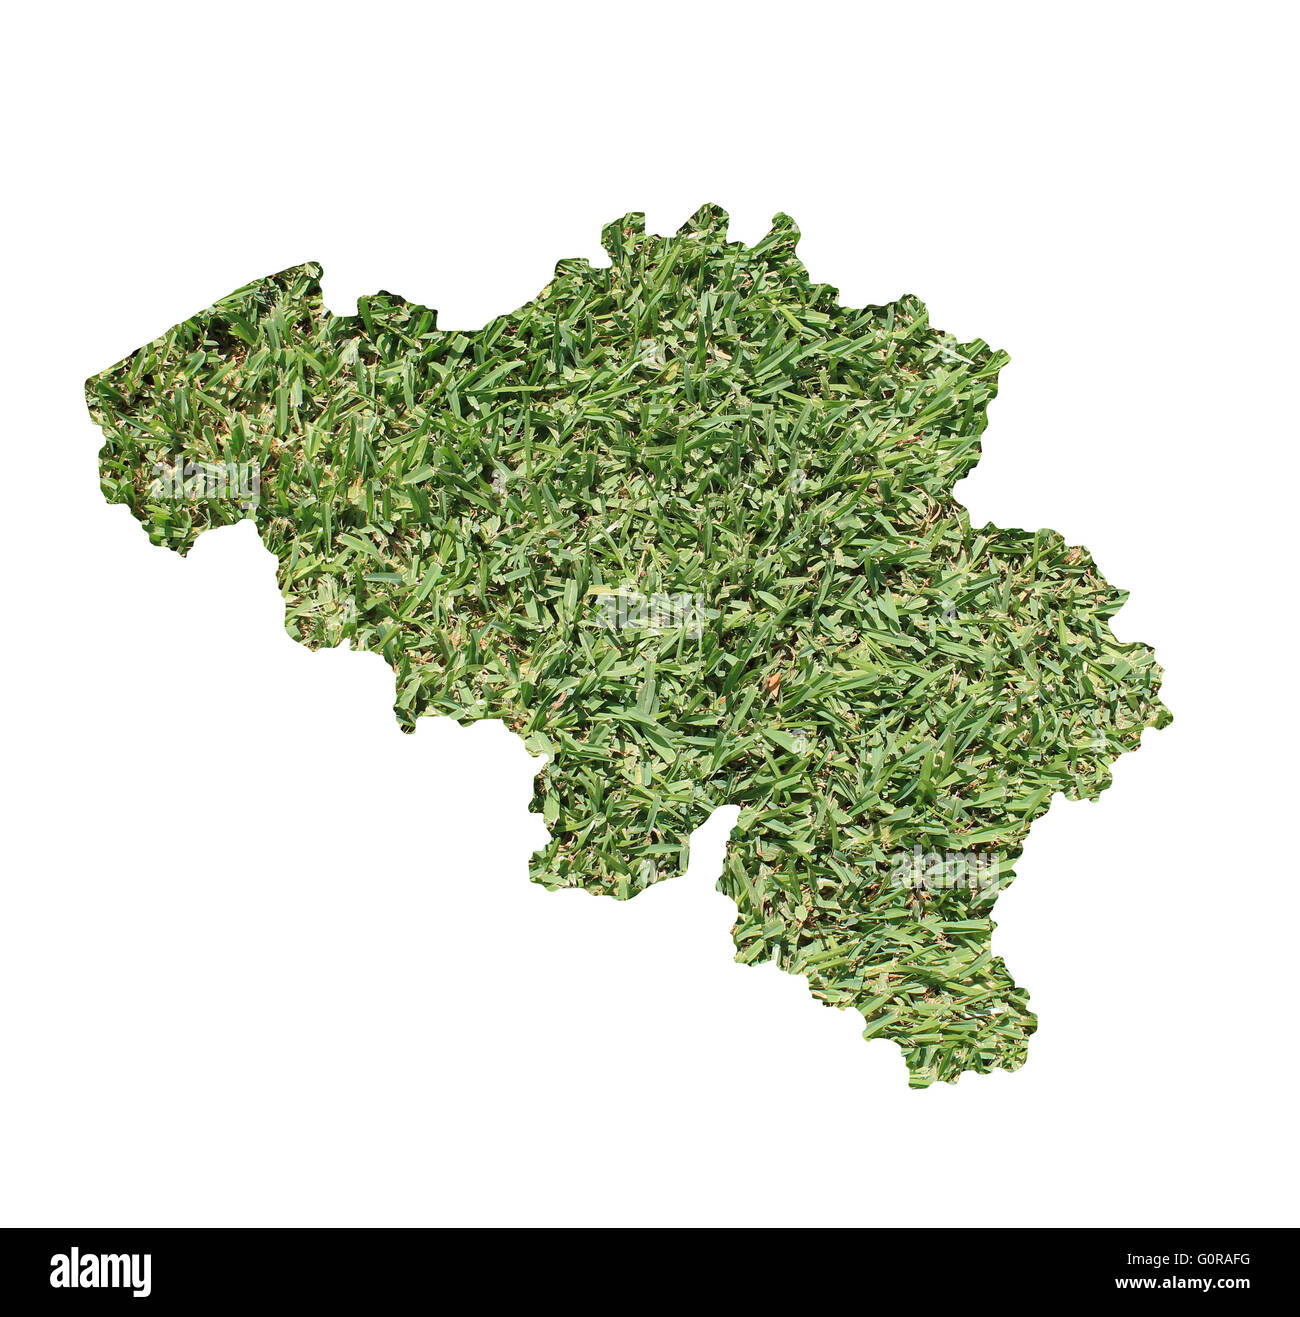 Mappa del Belgio riempiti con erba verde, ambientale e concetto ecologico. Foto Stock